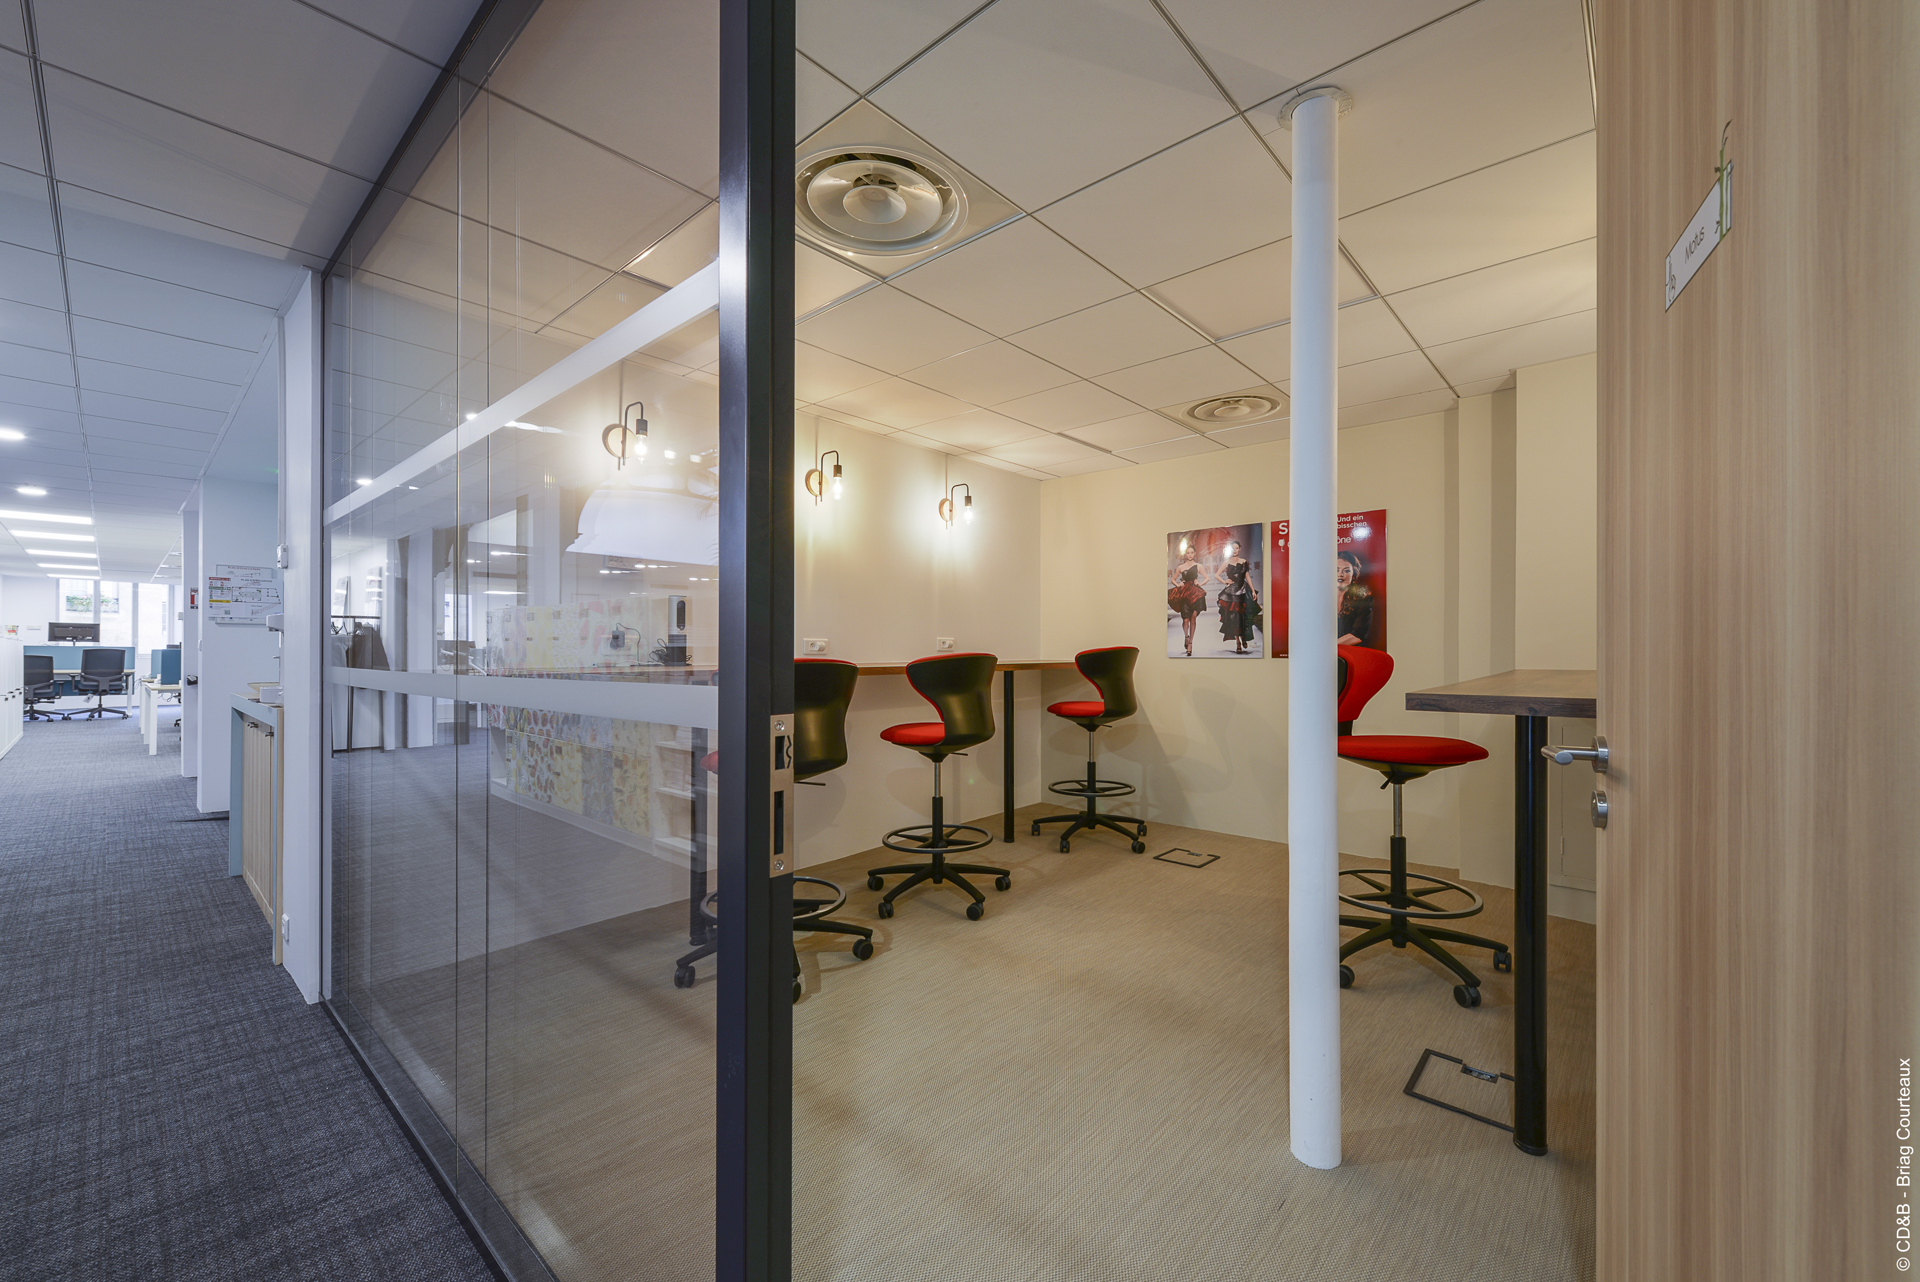 Conseil, aménagement, conception et réalisation des espaces de bureaux de la société SOPEXA par CDB, Meet you there.